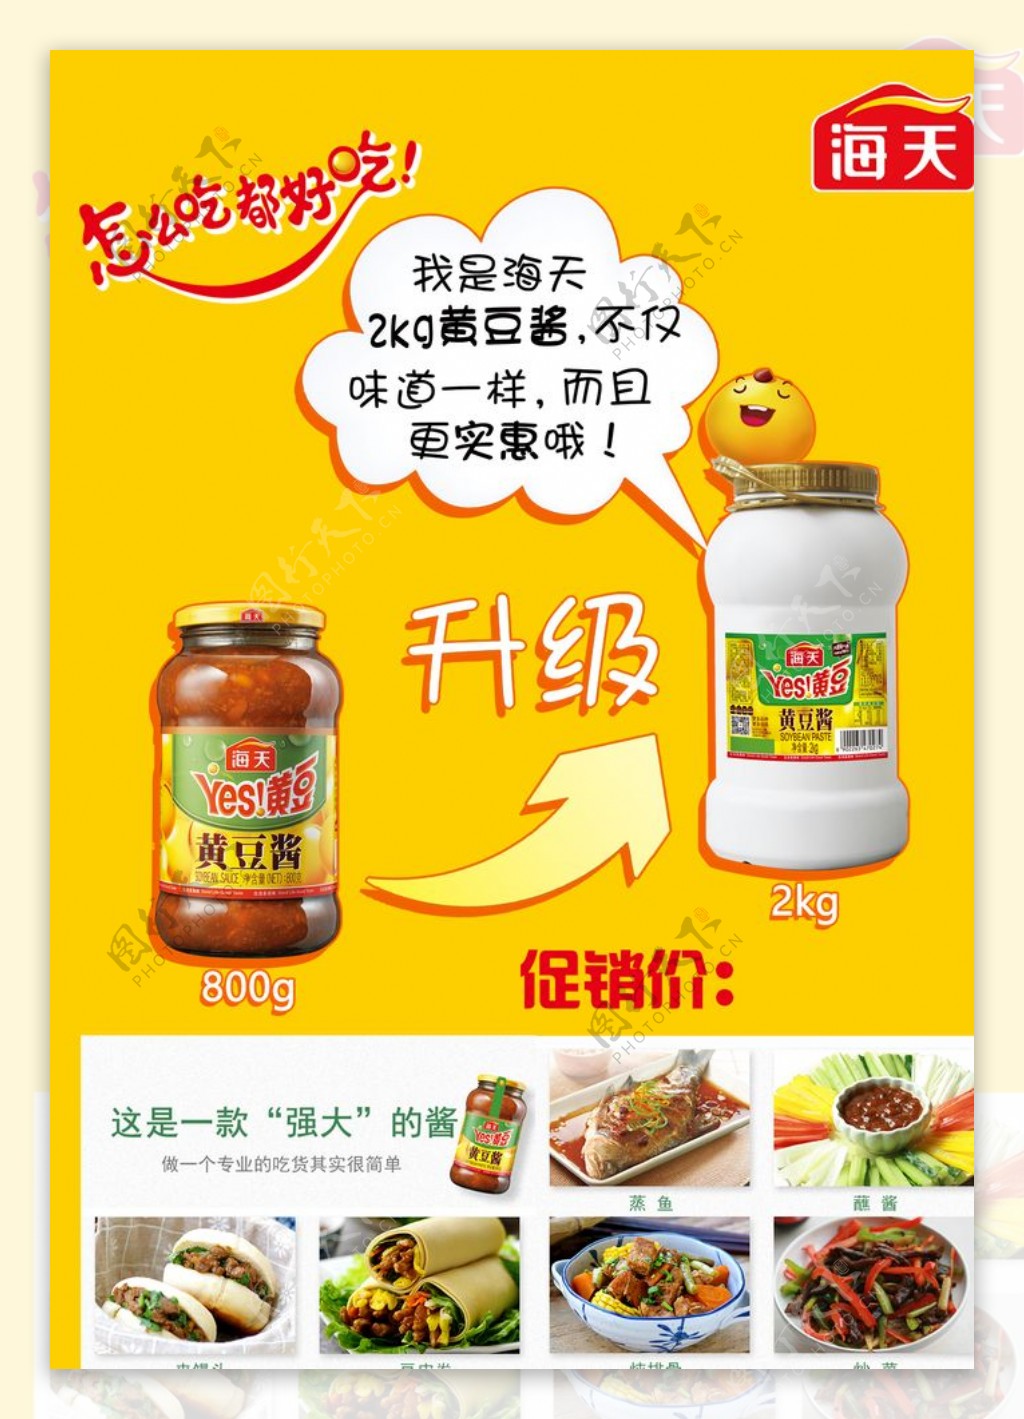 海天黄豆酱产品海报黄色背景升级图片